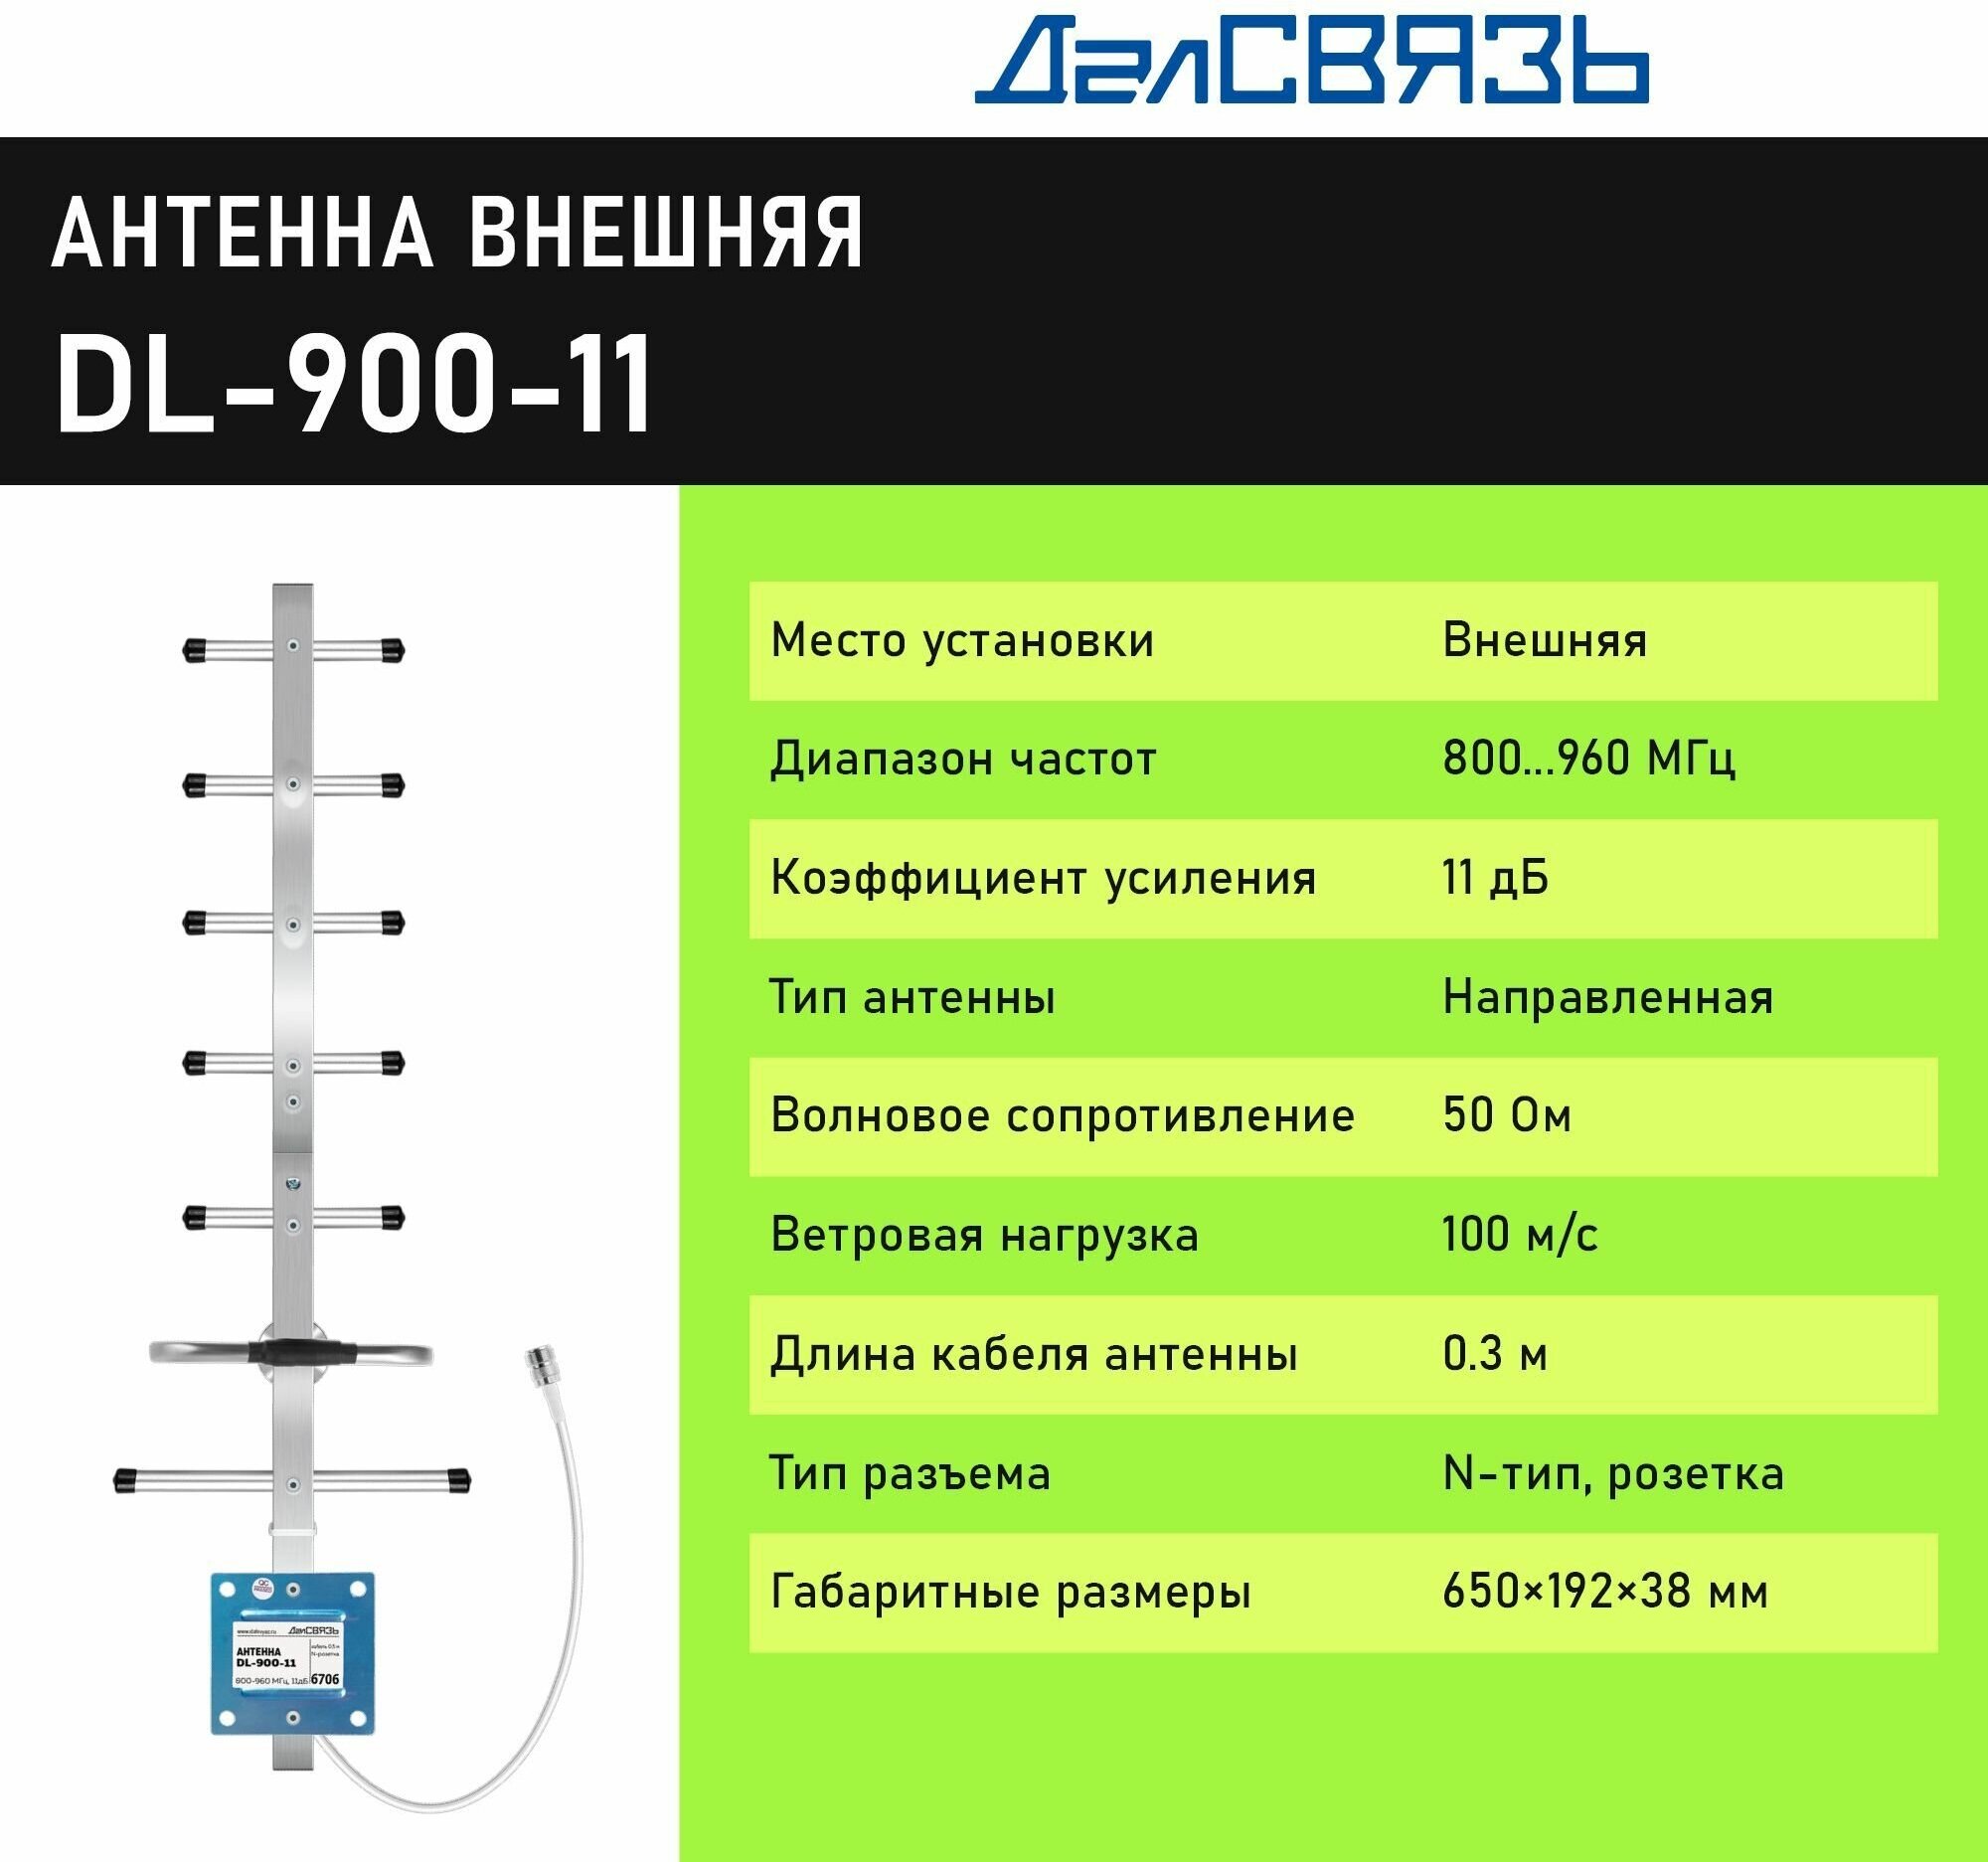 Антенна для усиления сотового сигнала ДалСвязь DL-900-11 направленная всепогодная узкополосная 2G GSM900 3G UMTS900